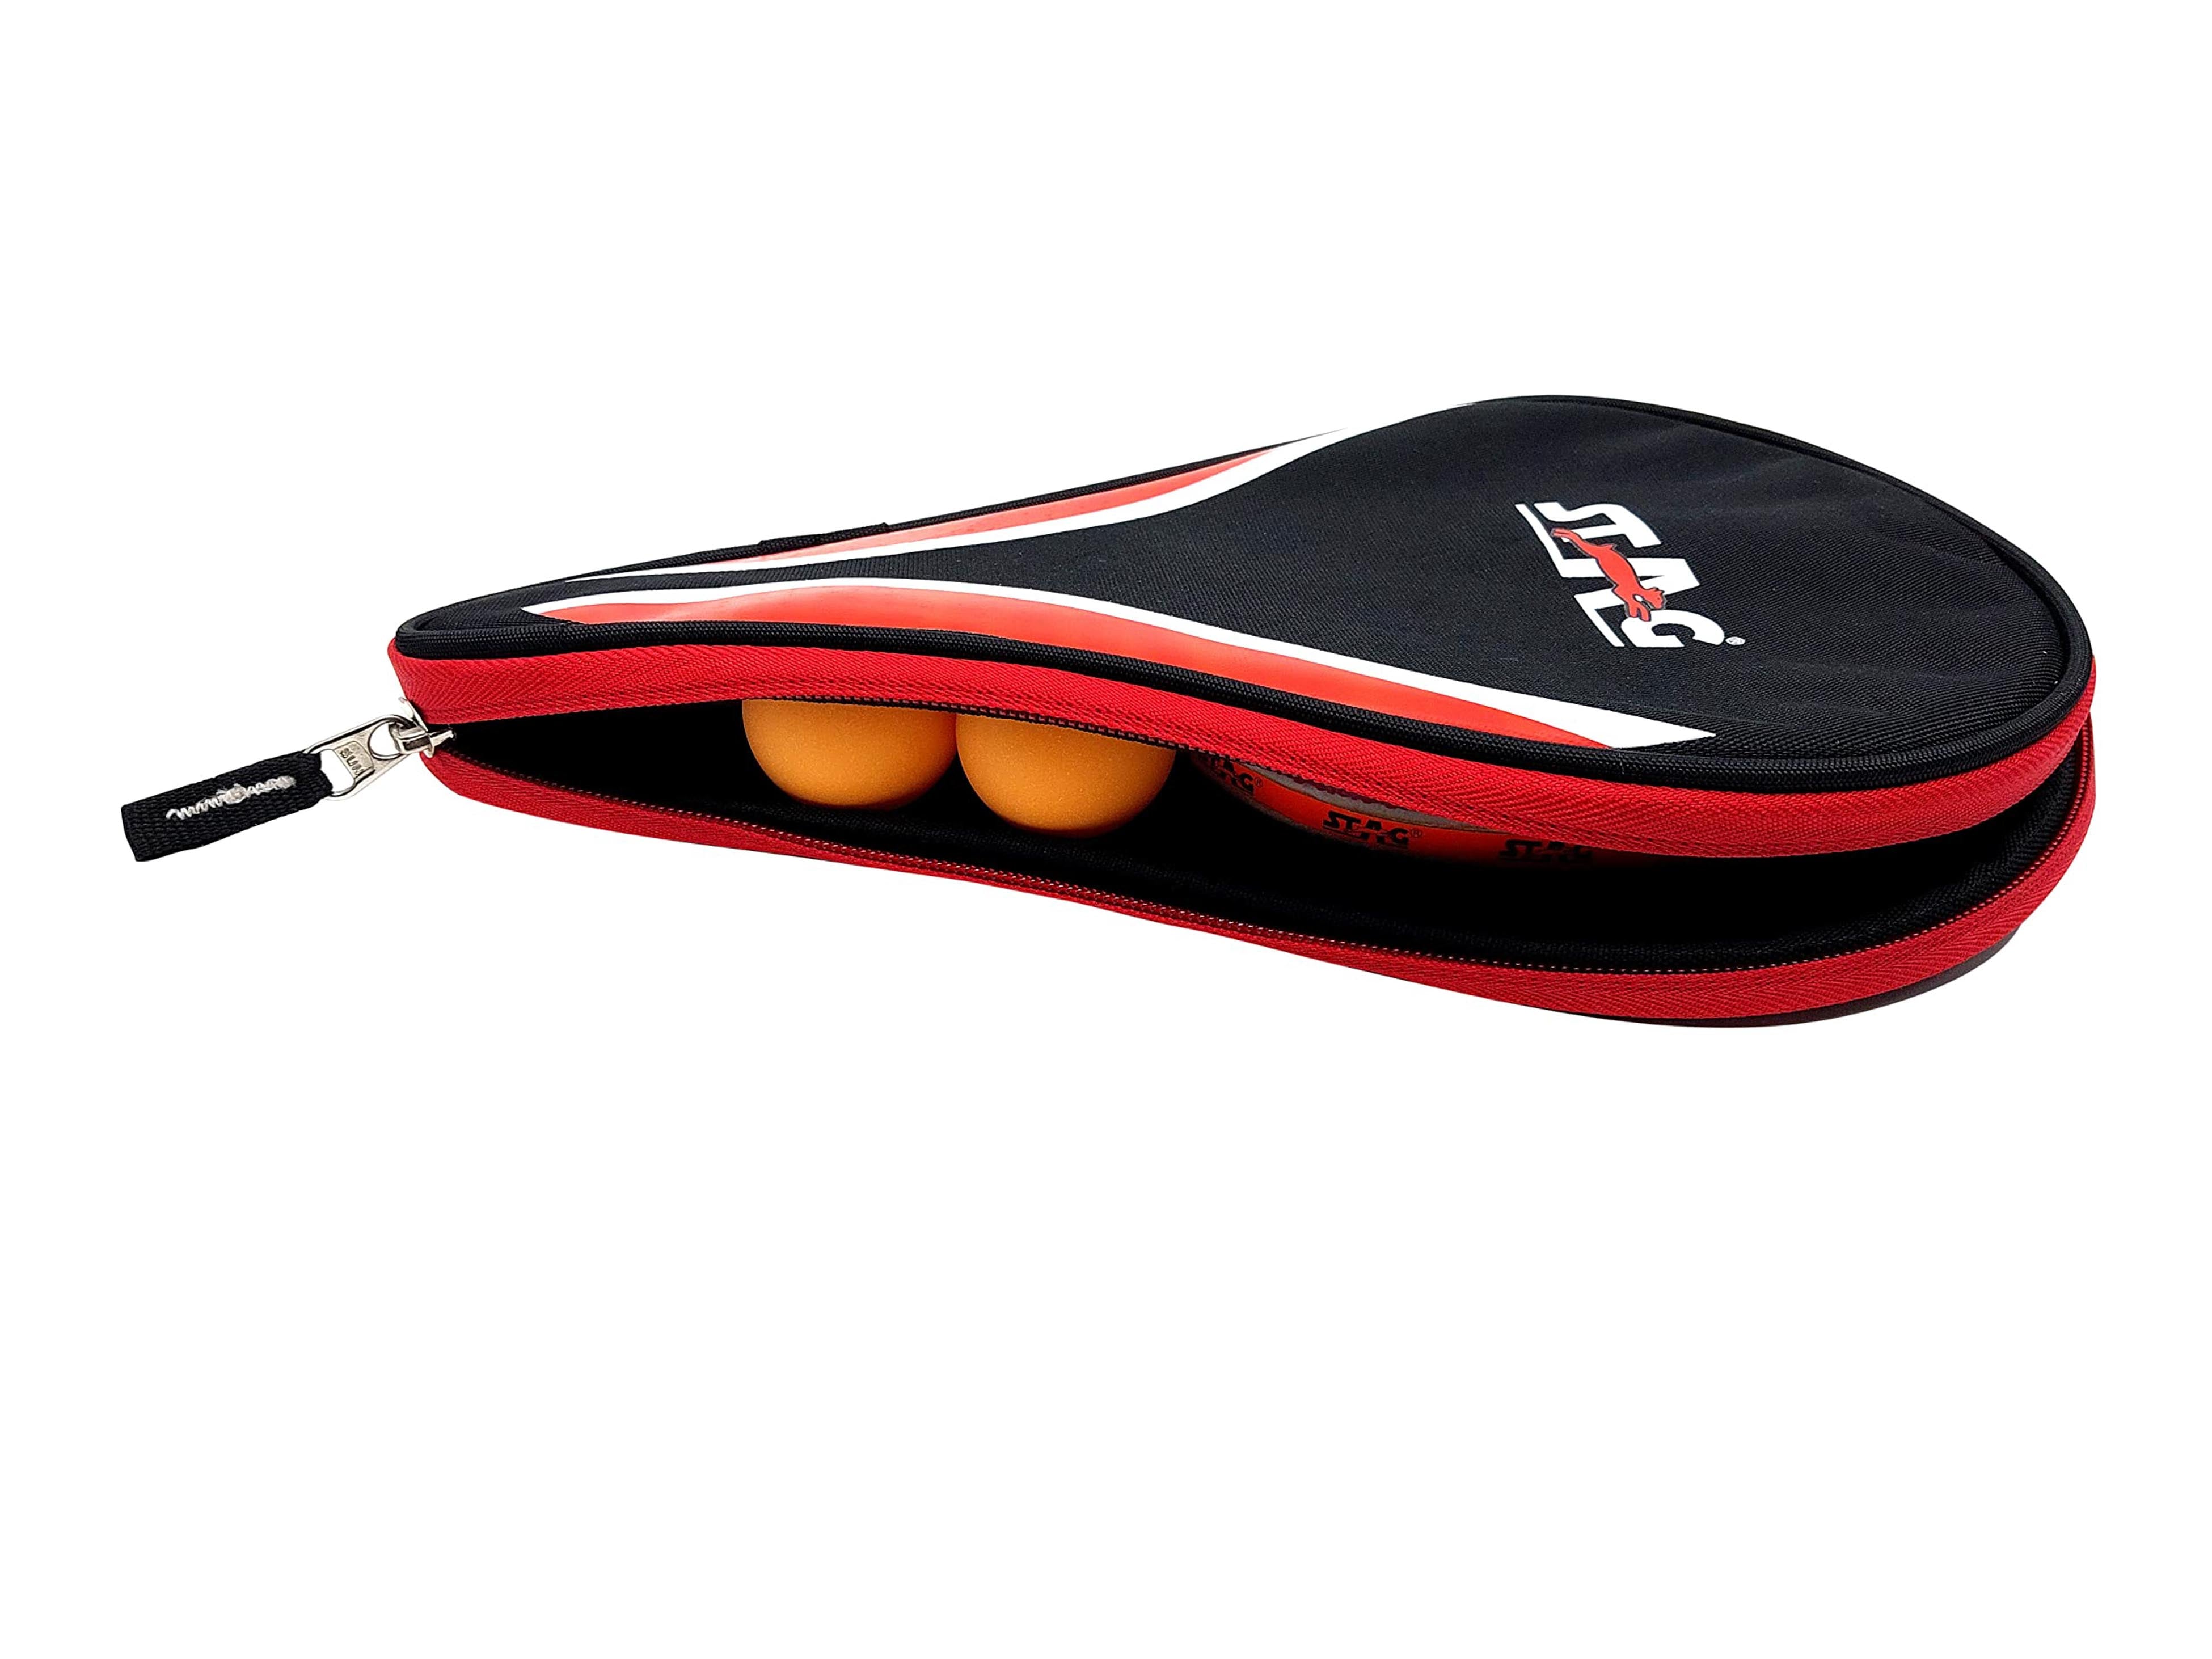 Stag Iconic Premium Table Tennis Racquet Case